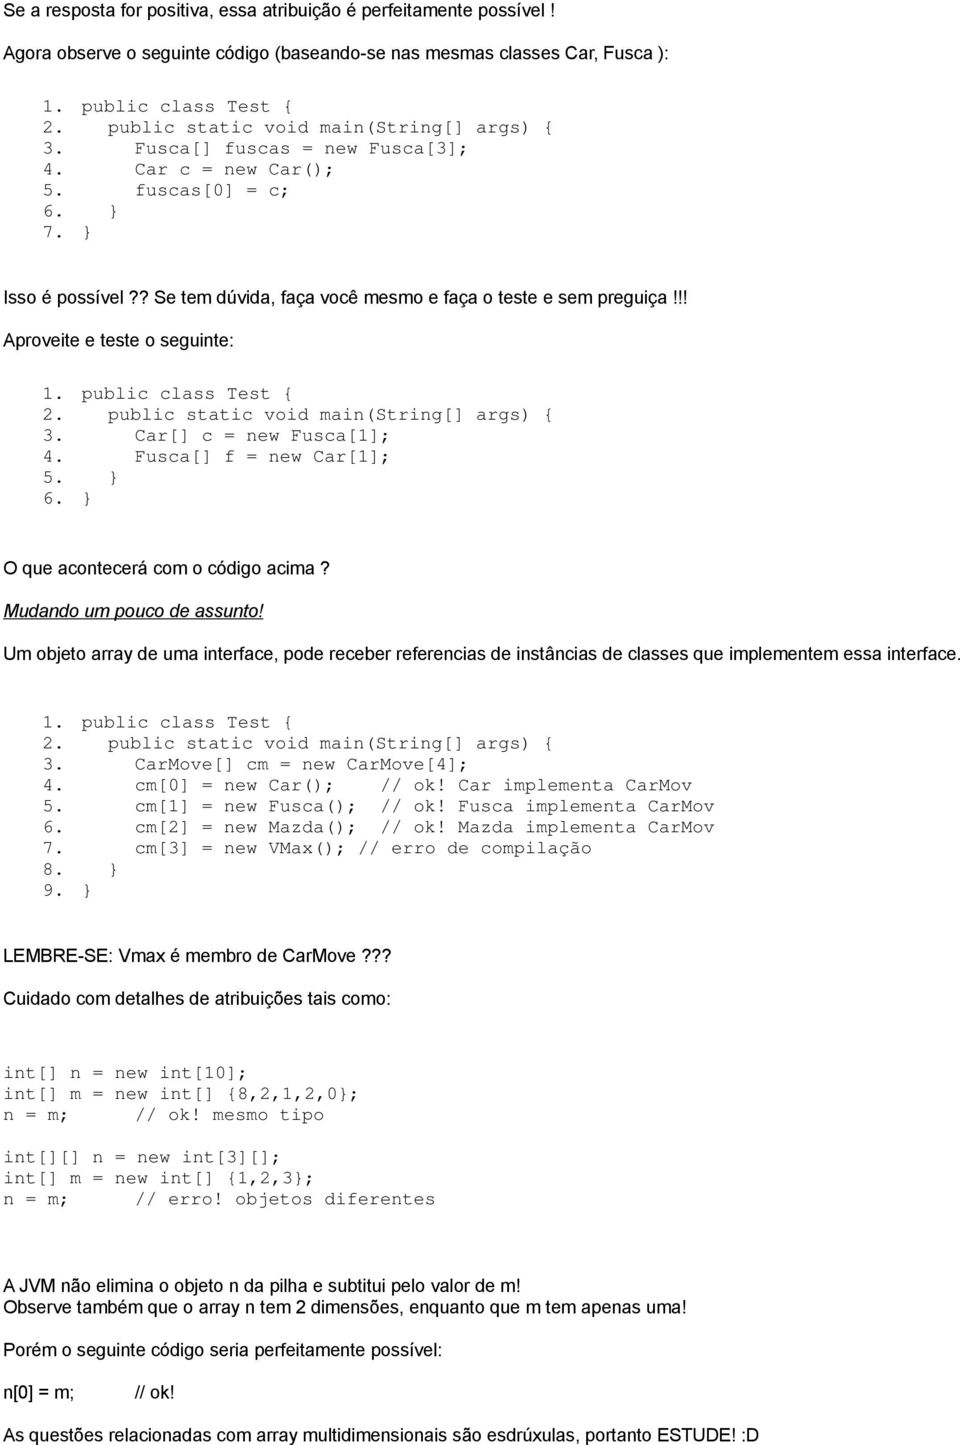 !! Aproveite e teste o seguinte: 1. public class Test { 2. public static void main(string[] args) { 3. Car[] c = new Fusca[1]; 4. Fusca[] f = new Car[1]; 5. } O que acontecerá com o código acima?